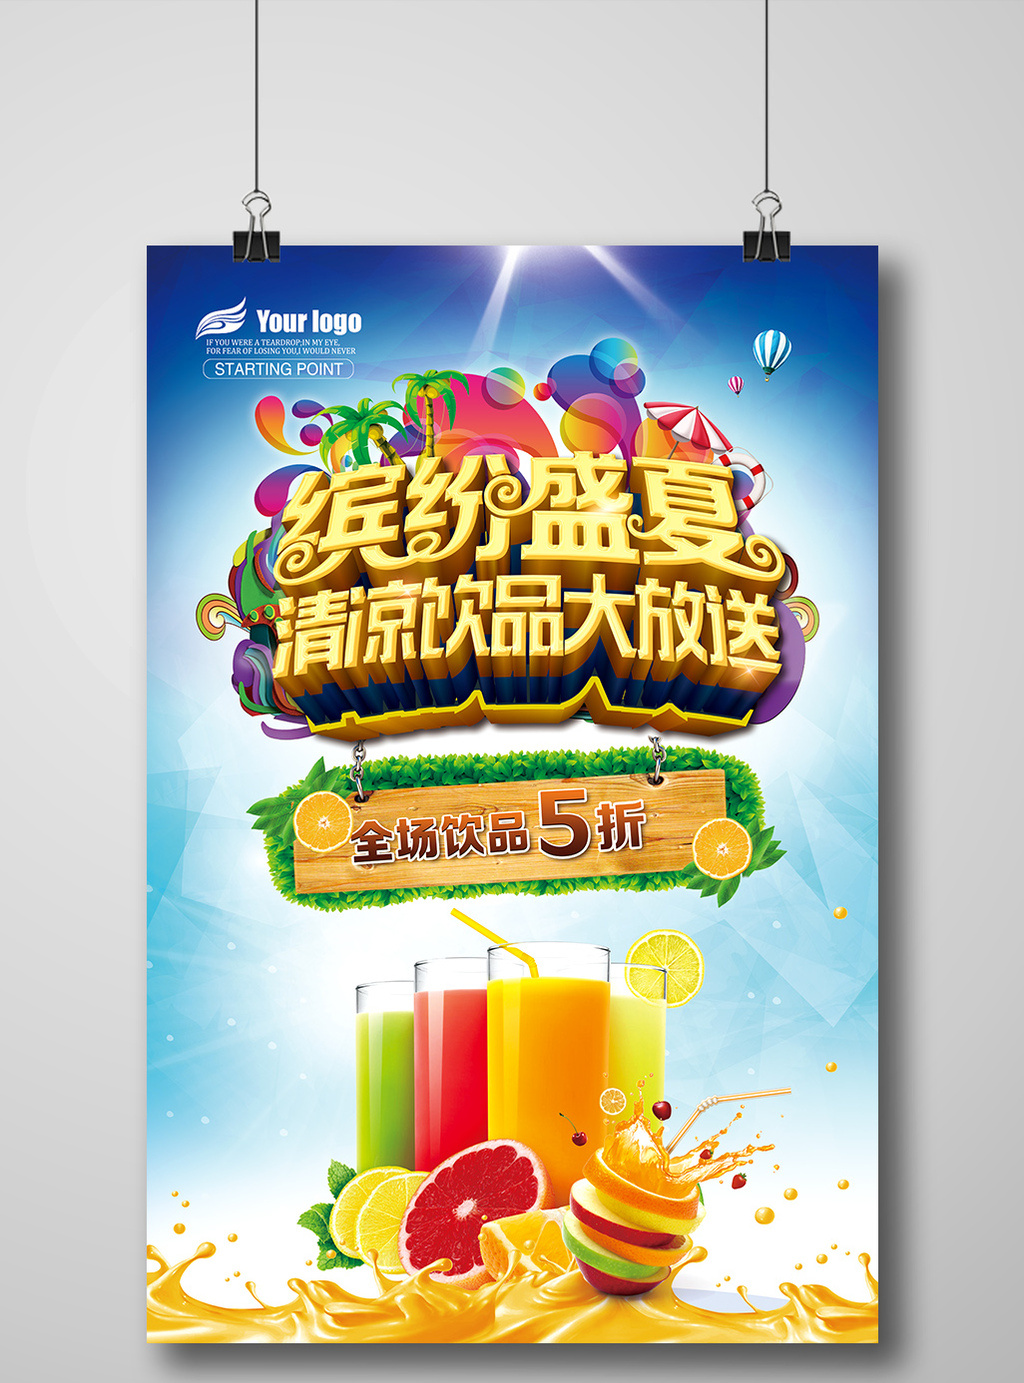 的夏日果汁饮品宣传单海报模板素材免费下载,本次作品主题是广告设计